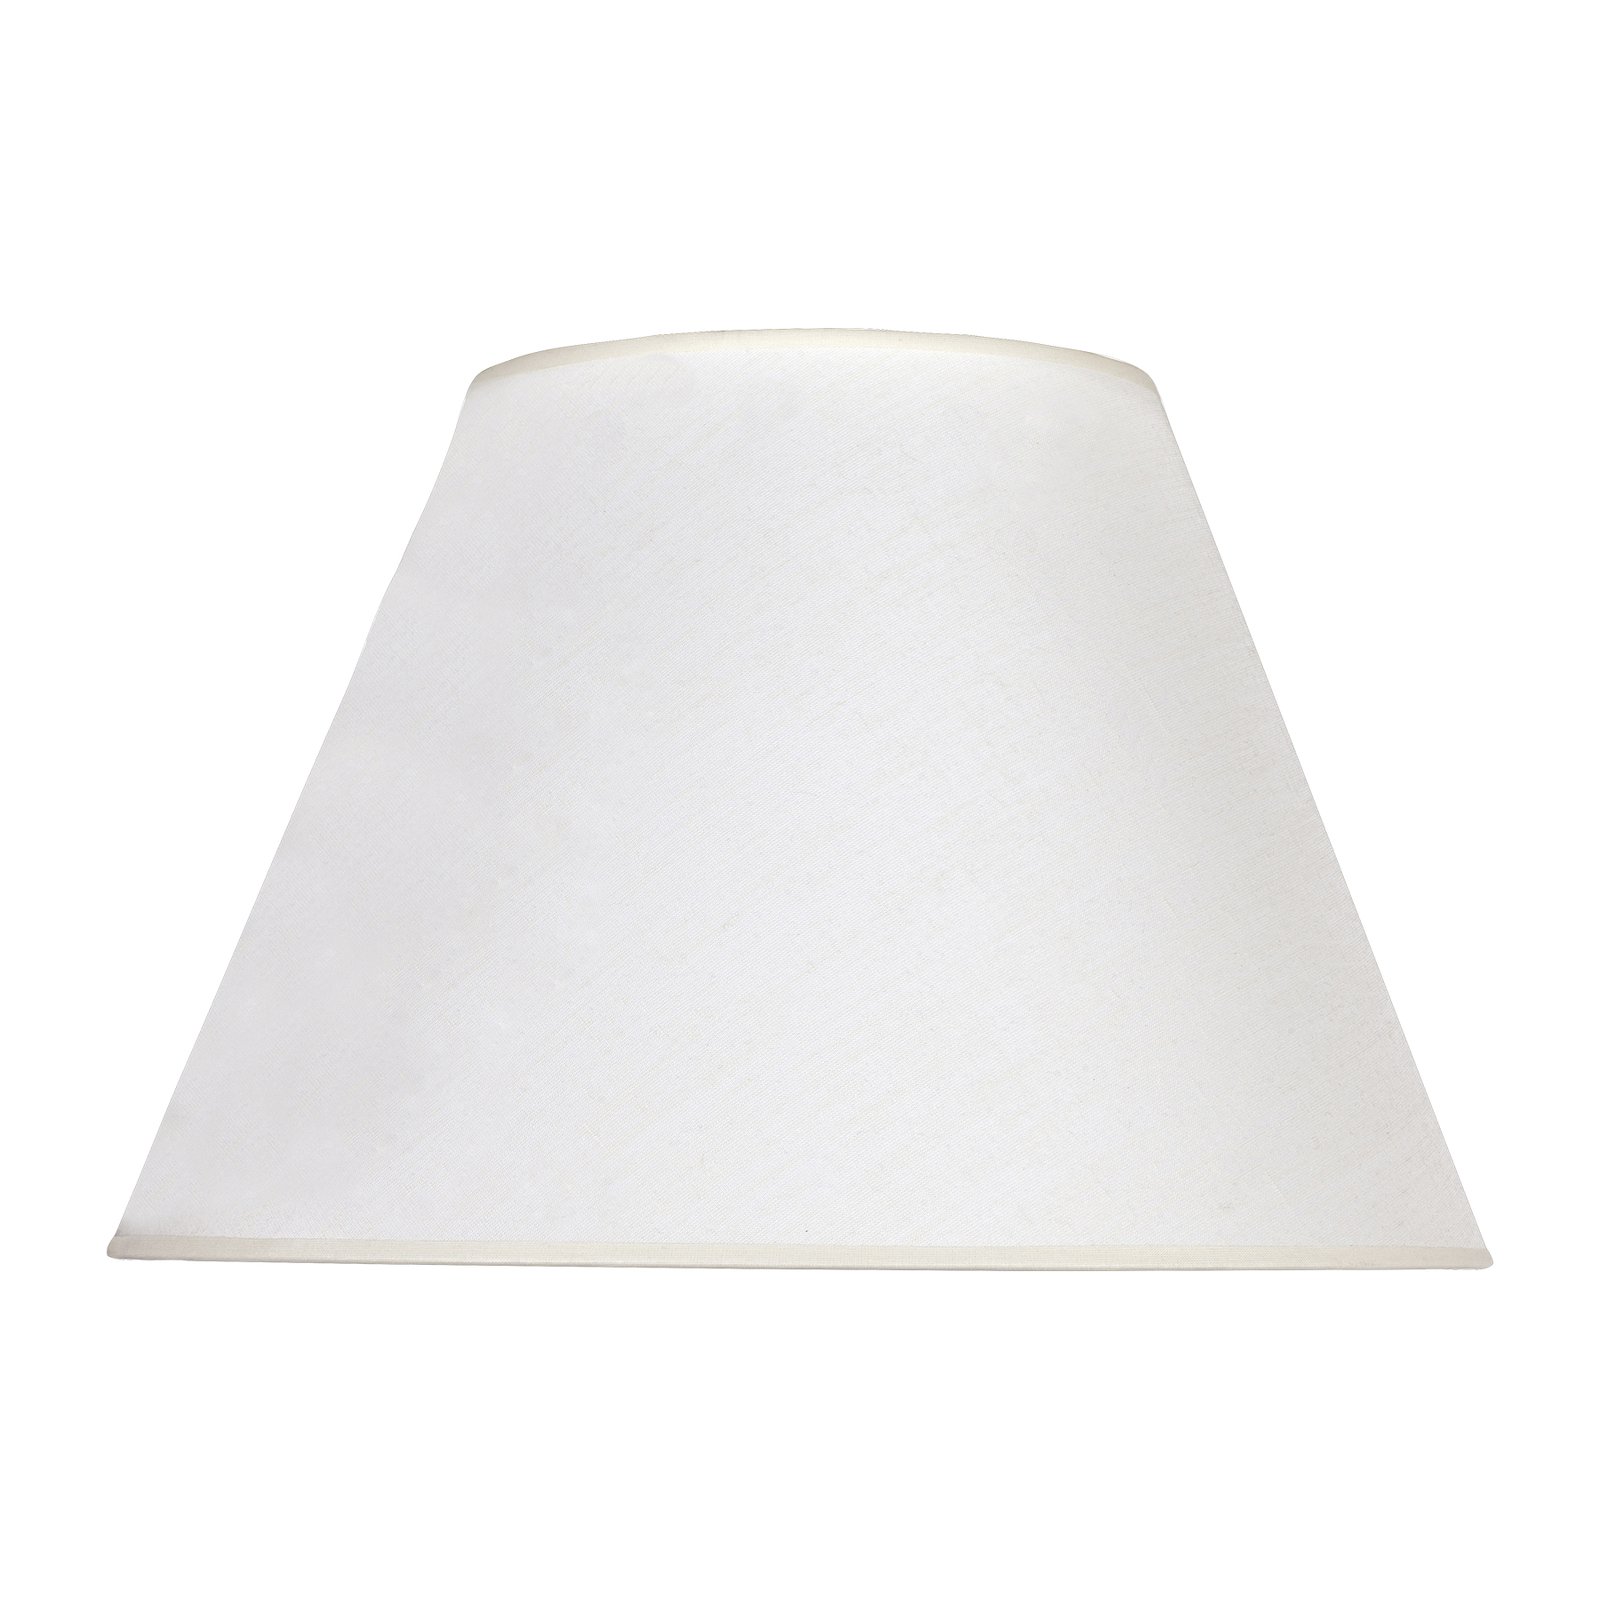 Pseudosofia lampshade for floor lamp ecru/texture